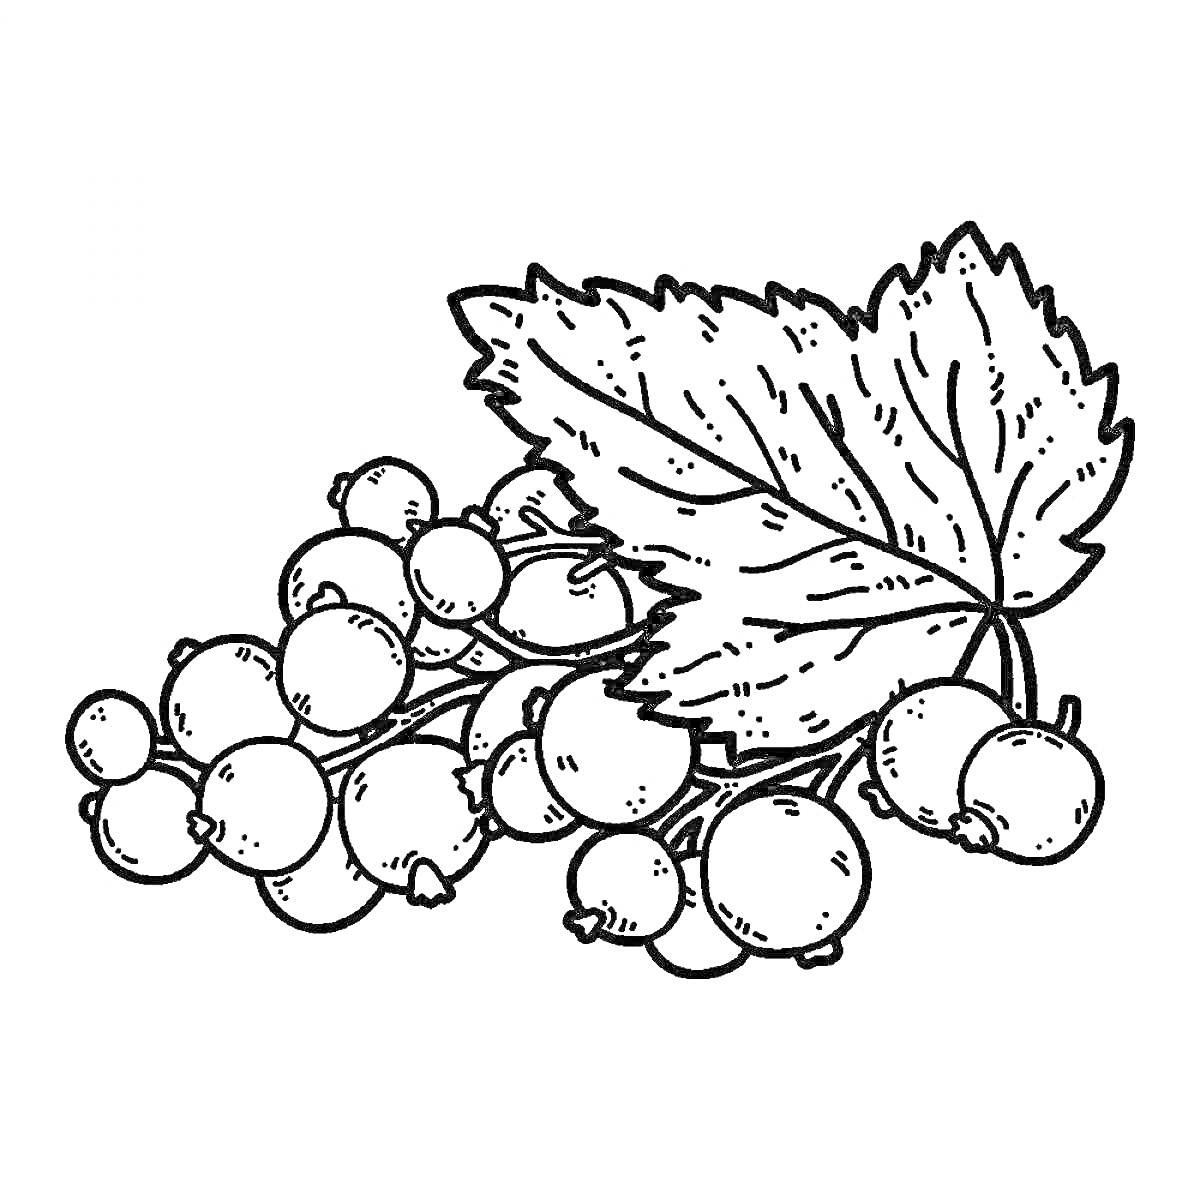 Веточка смородины с ягодами и листьями